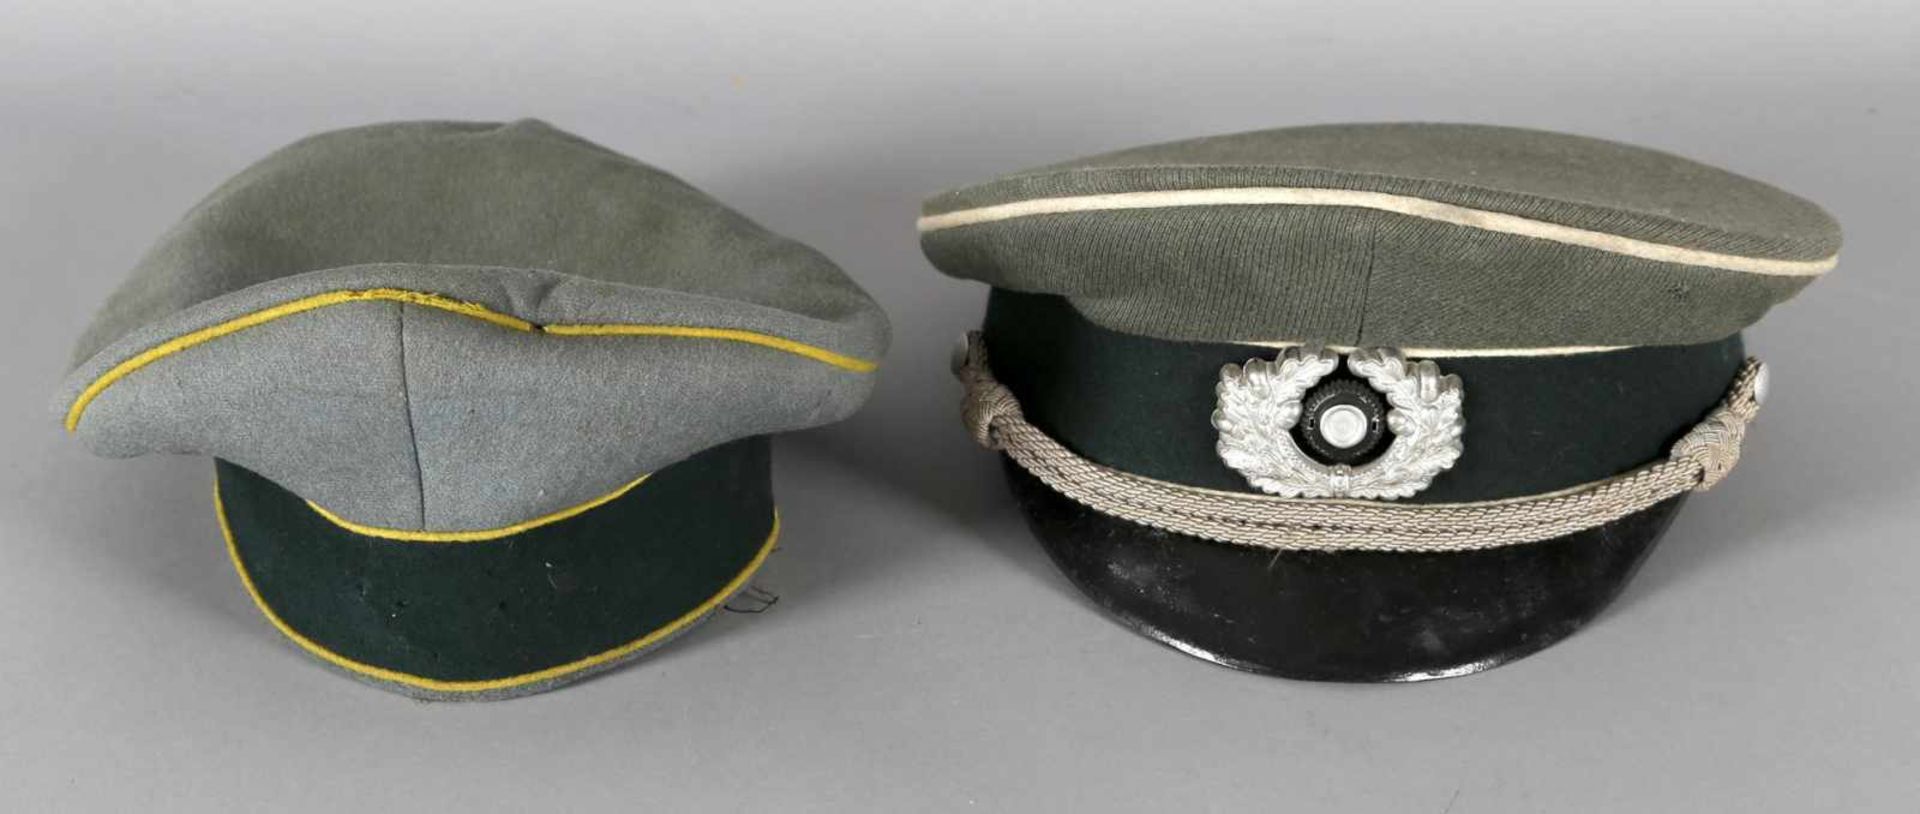 Zwei Mützen, dt. Reich, 1933-45- eine Mütze in dunkelgrün und hellblau mit gelben Bordüren,